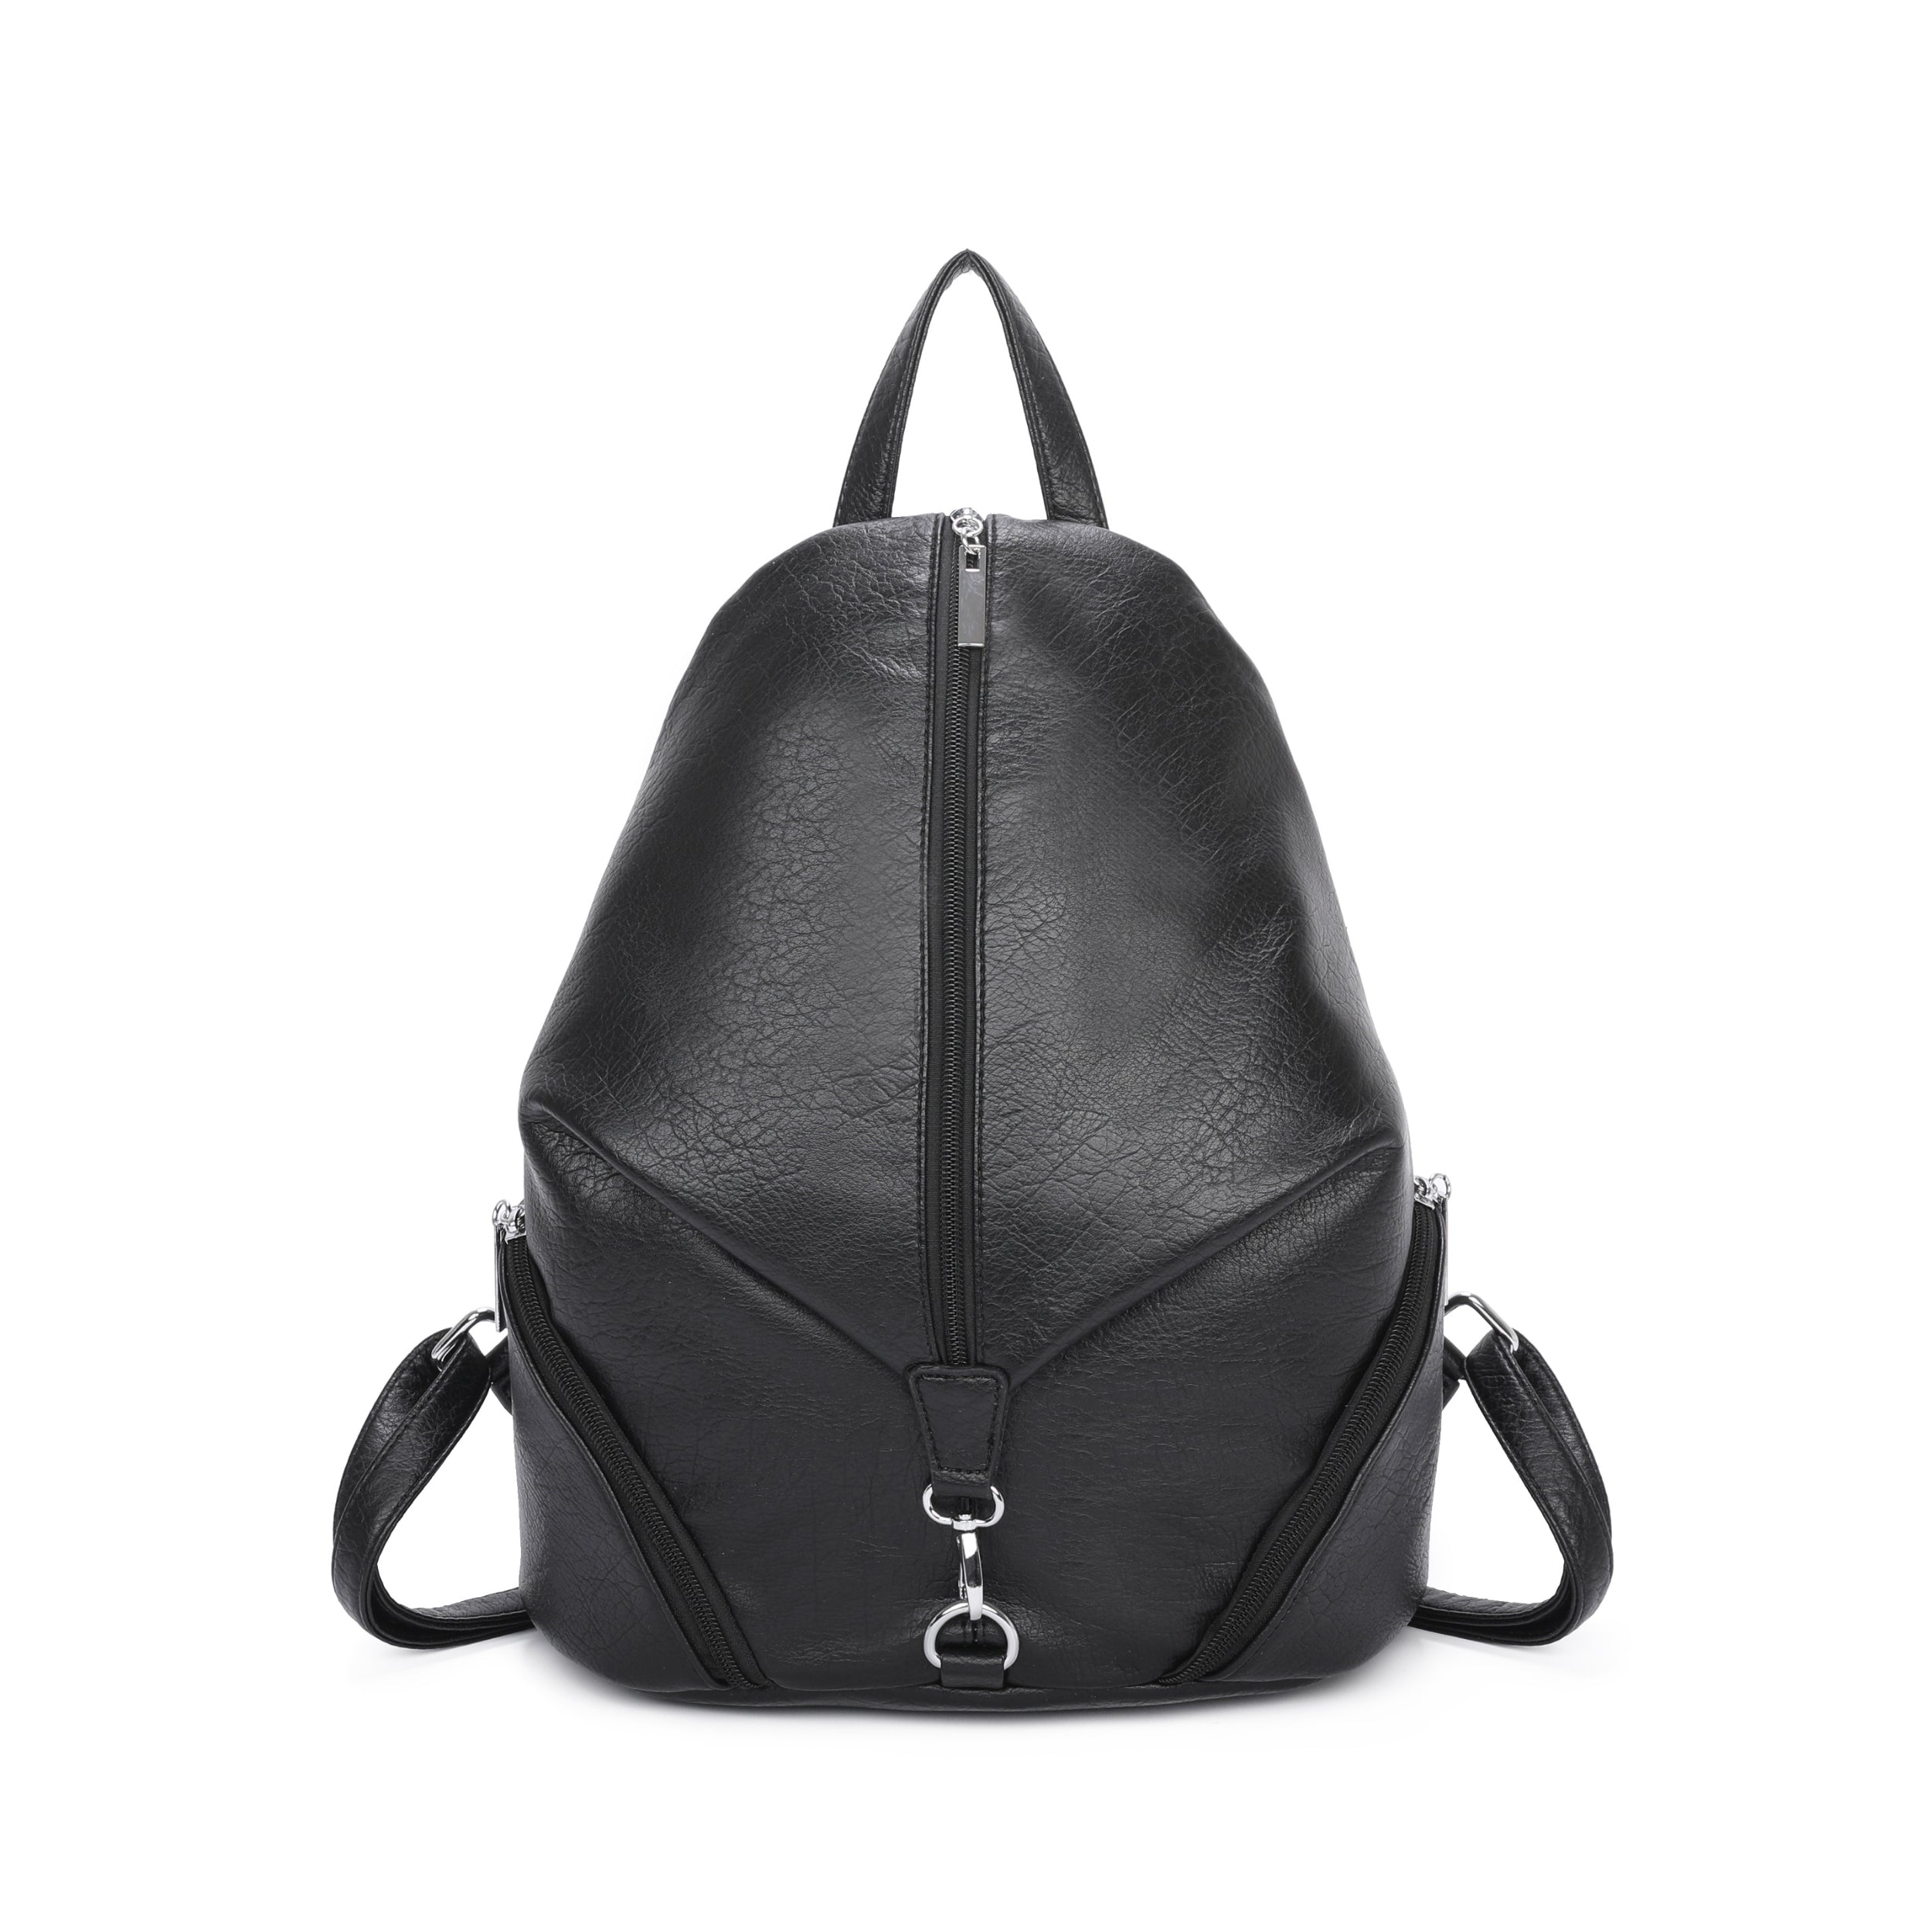 Craze London Backpack with Adjustable shoulder straps